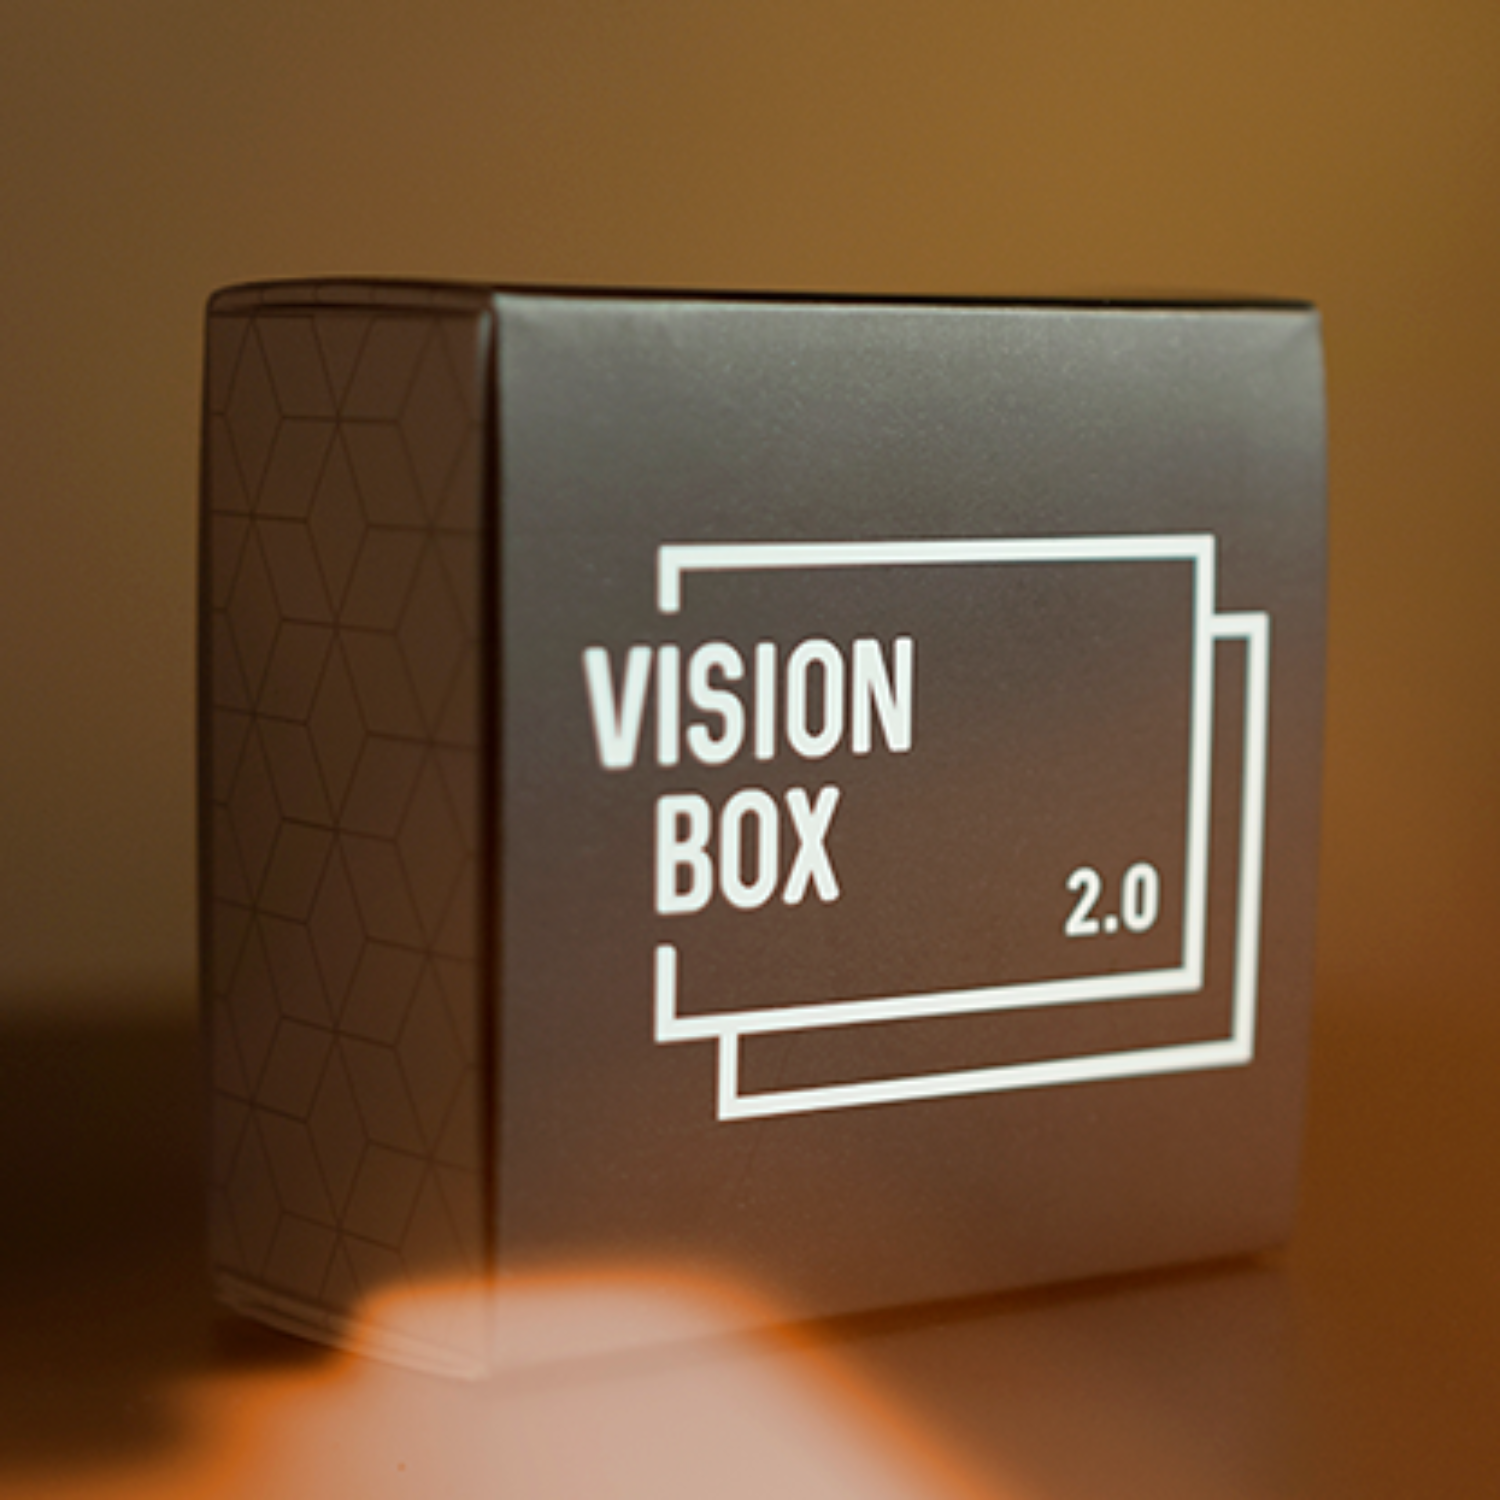 비전박스 2.0(Vision Box 2.0) 싸인한 관객의 카드가 투명한 박스안에서 나타납니다.